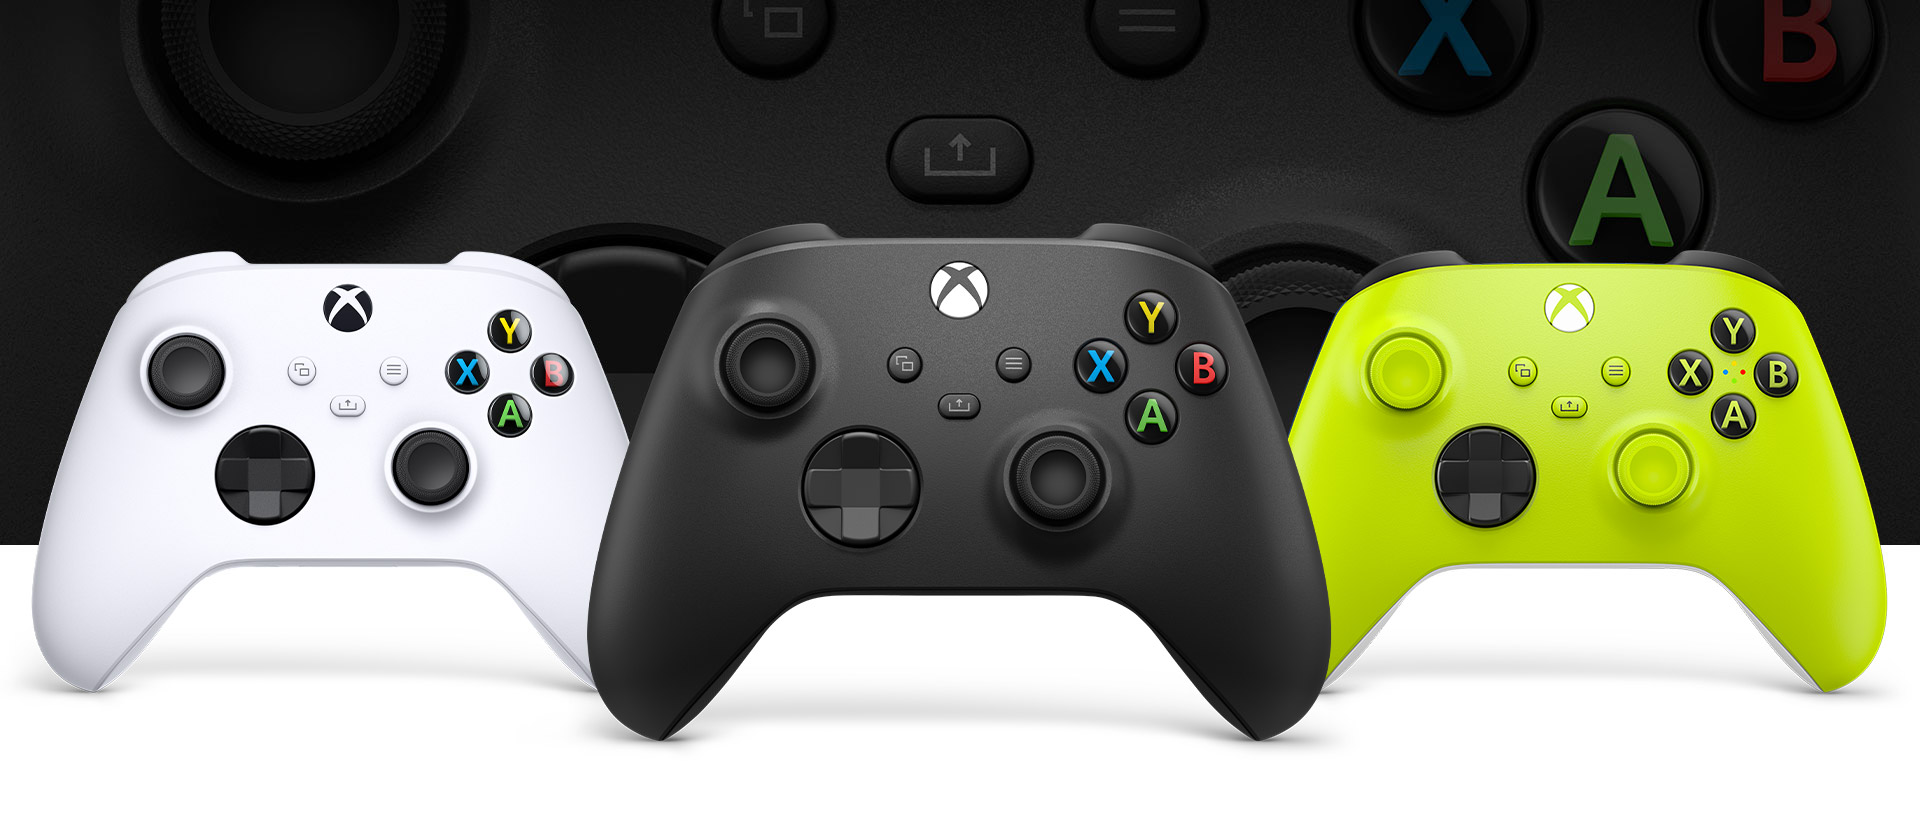 Xbox Wireless Controllers compared | Xbox